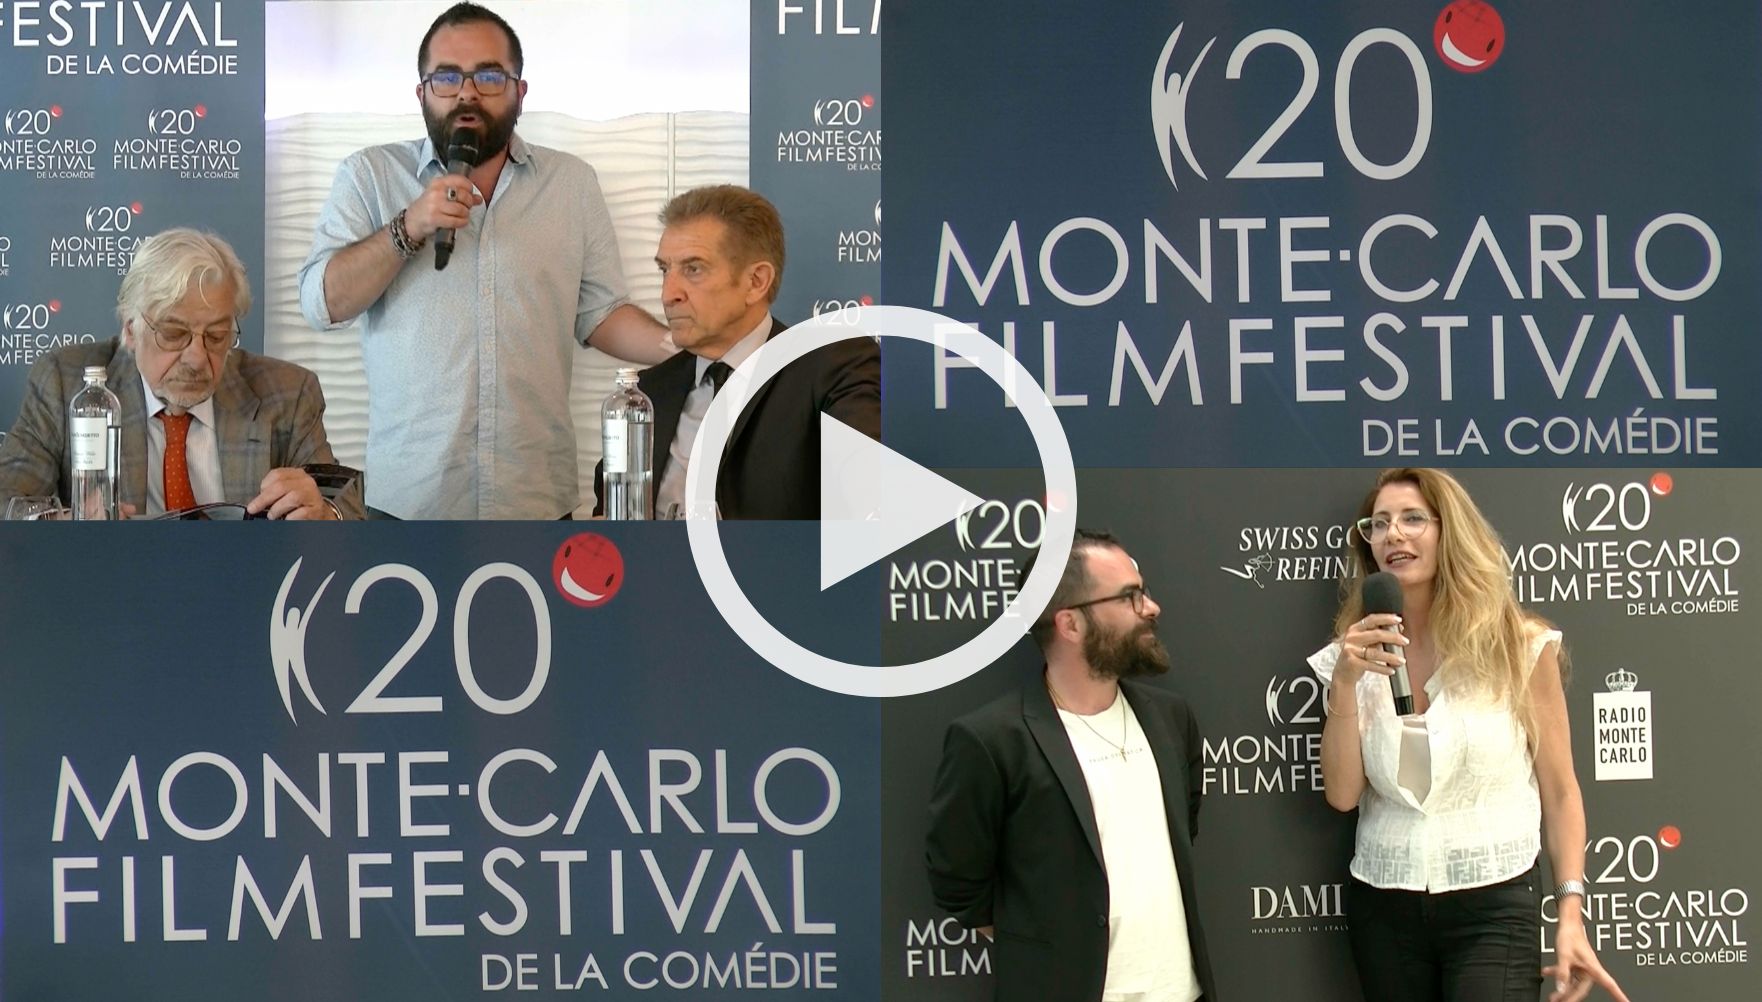 Monte-Carlo Film Festival de la Comédie- Quarta Puntata presenta Cristina Montepilli